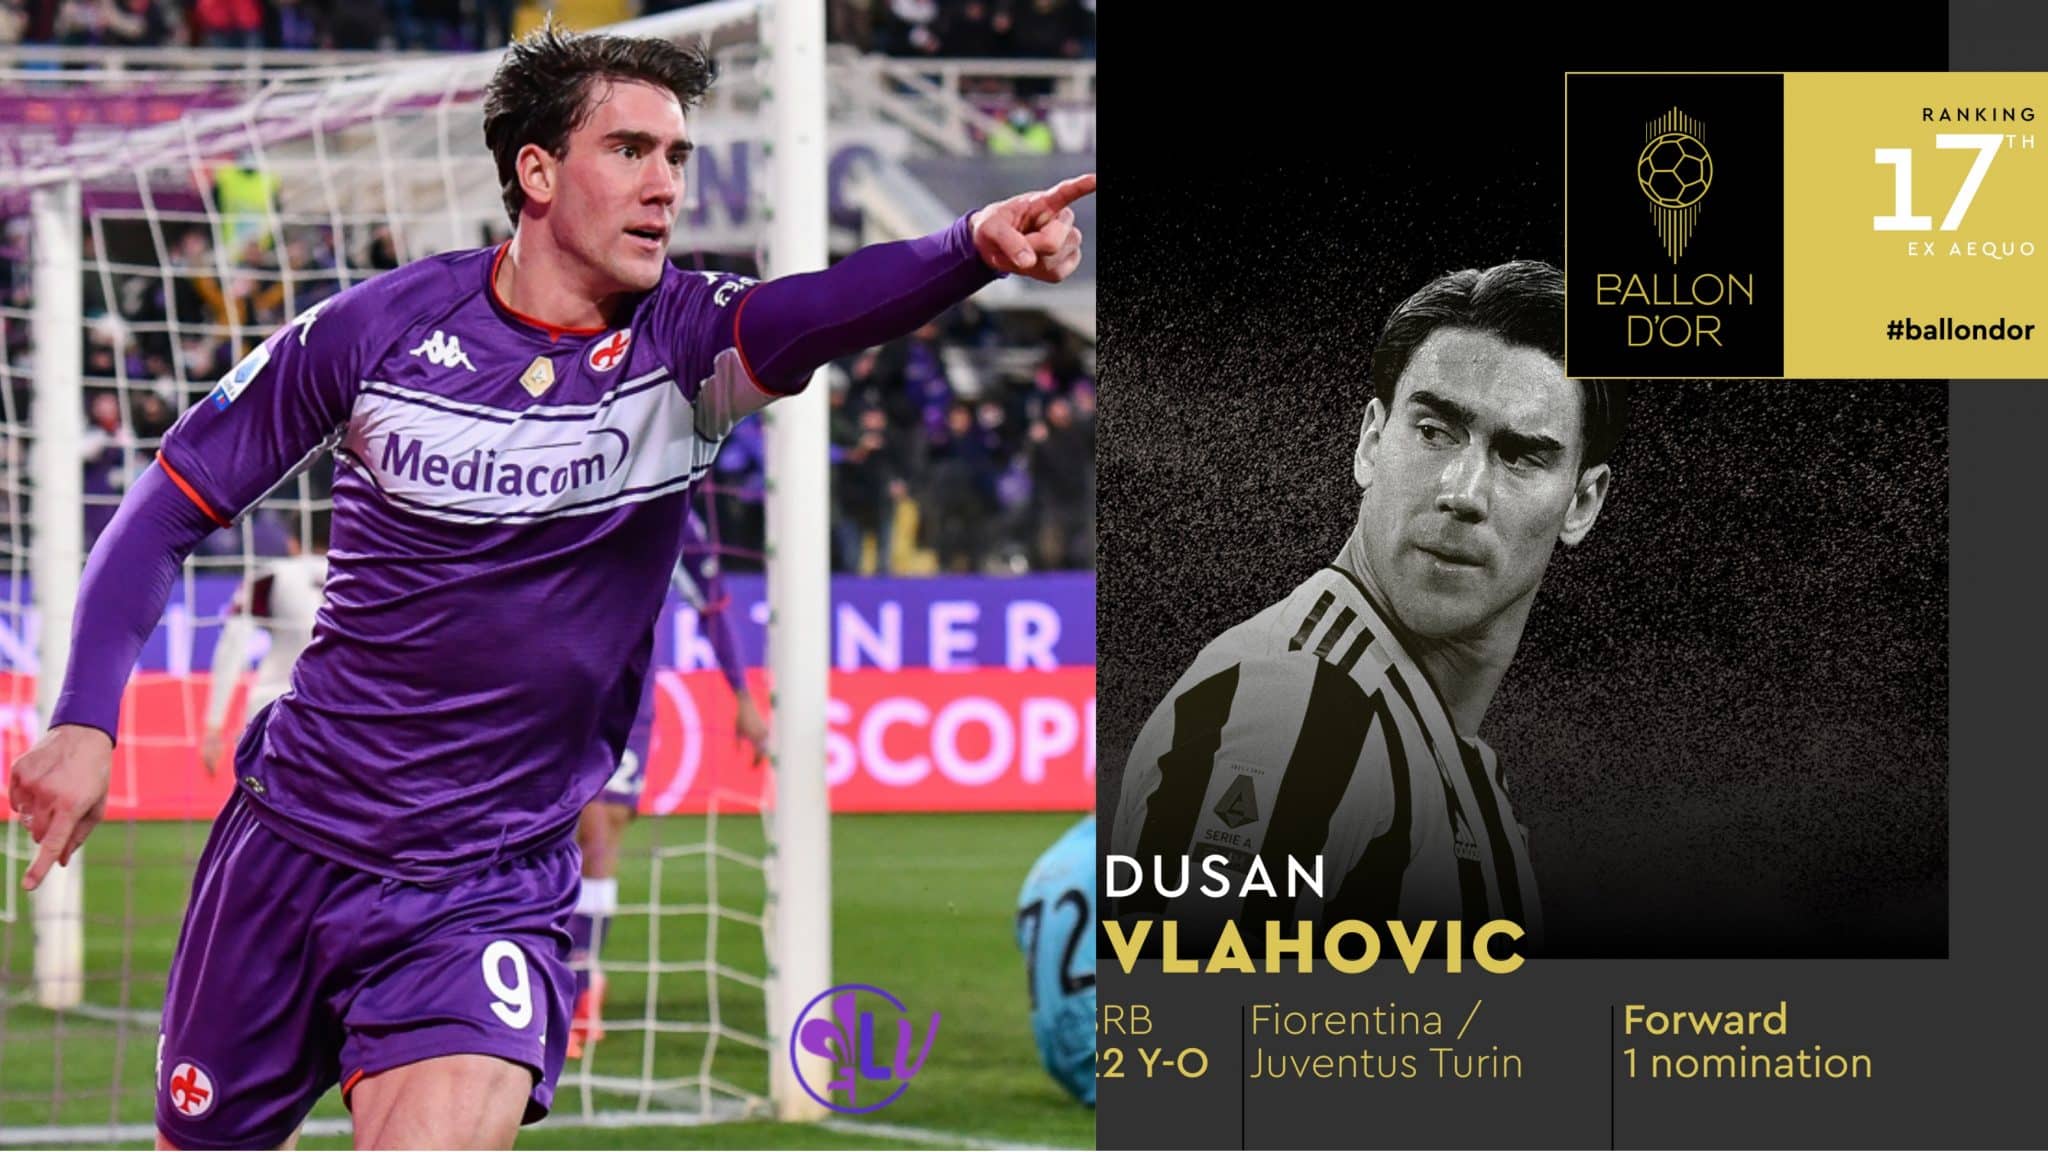 Les matchs et les buts avec la Fiorentina font voler Vlahovic, il est 17e du Ballon d&rsquo;Or.  CR7 derrière lui